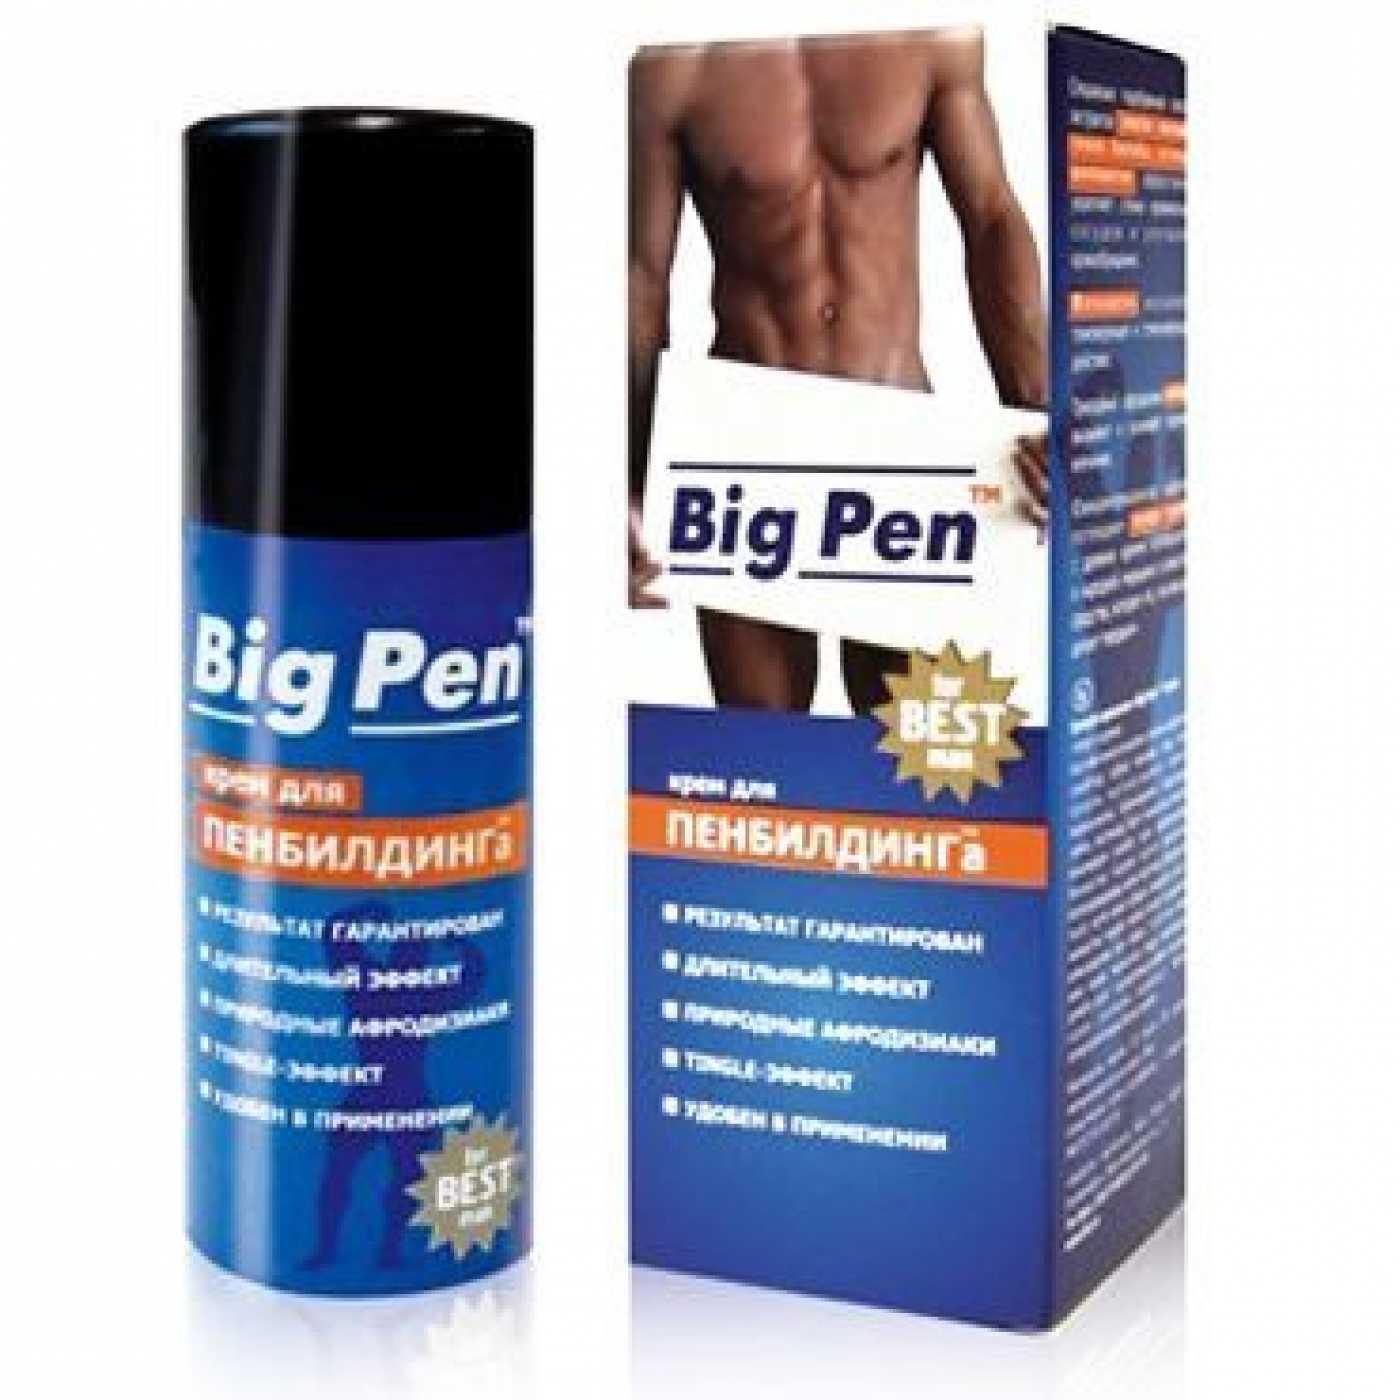 Big Pen крем для пенбилдинга и усиления эрекции 50 г. Vestalshop.ru - Изображение 4